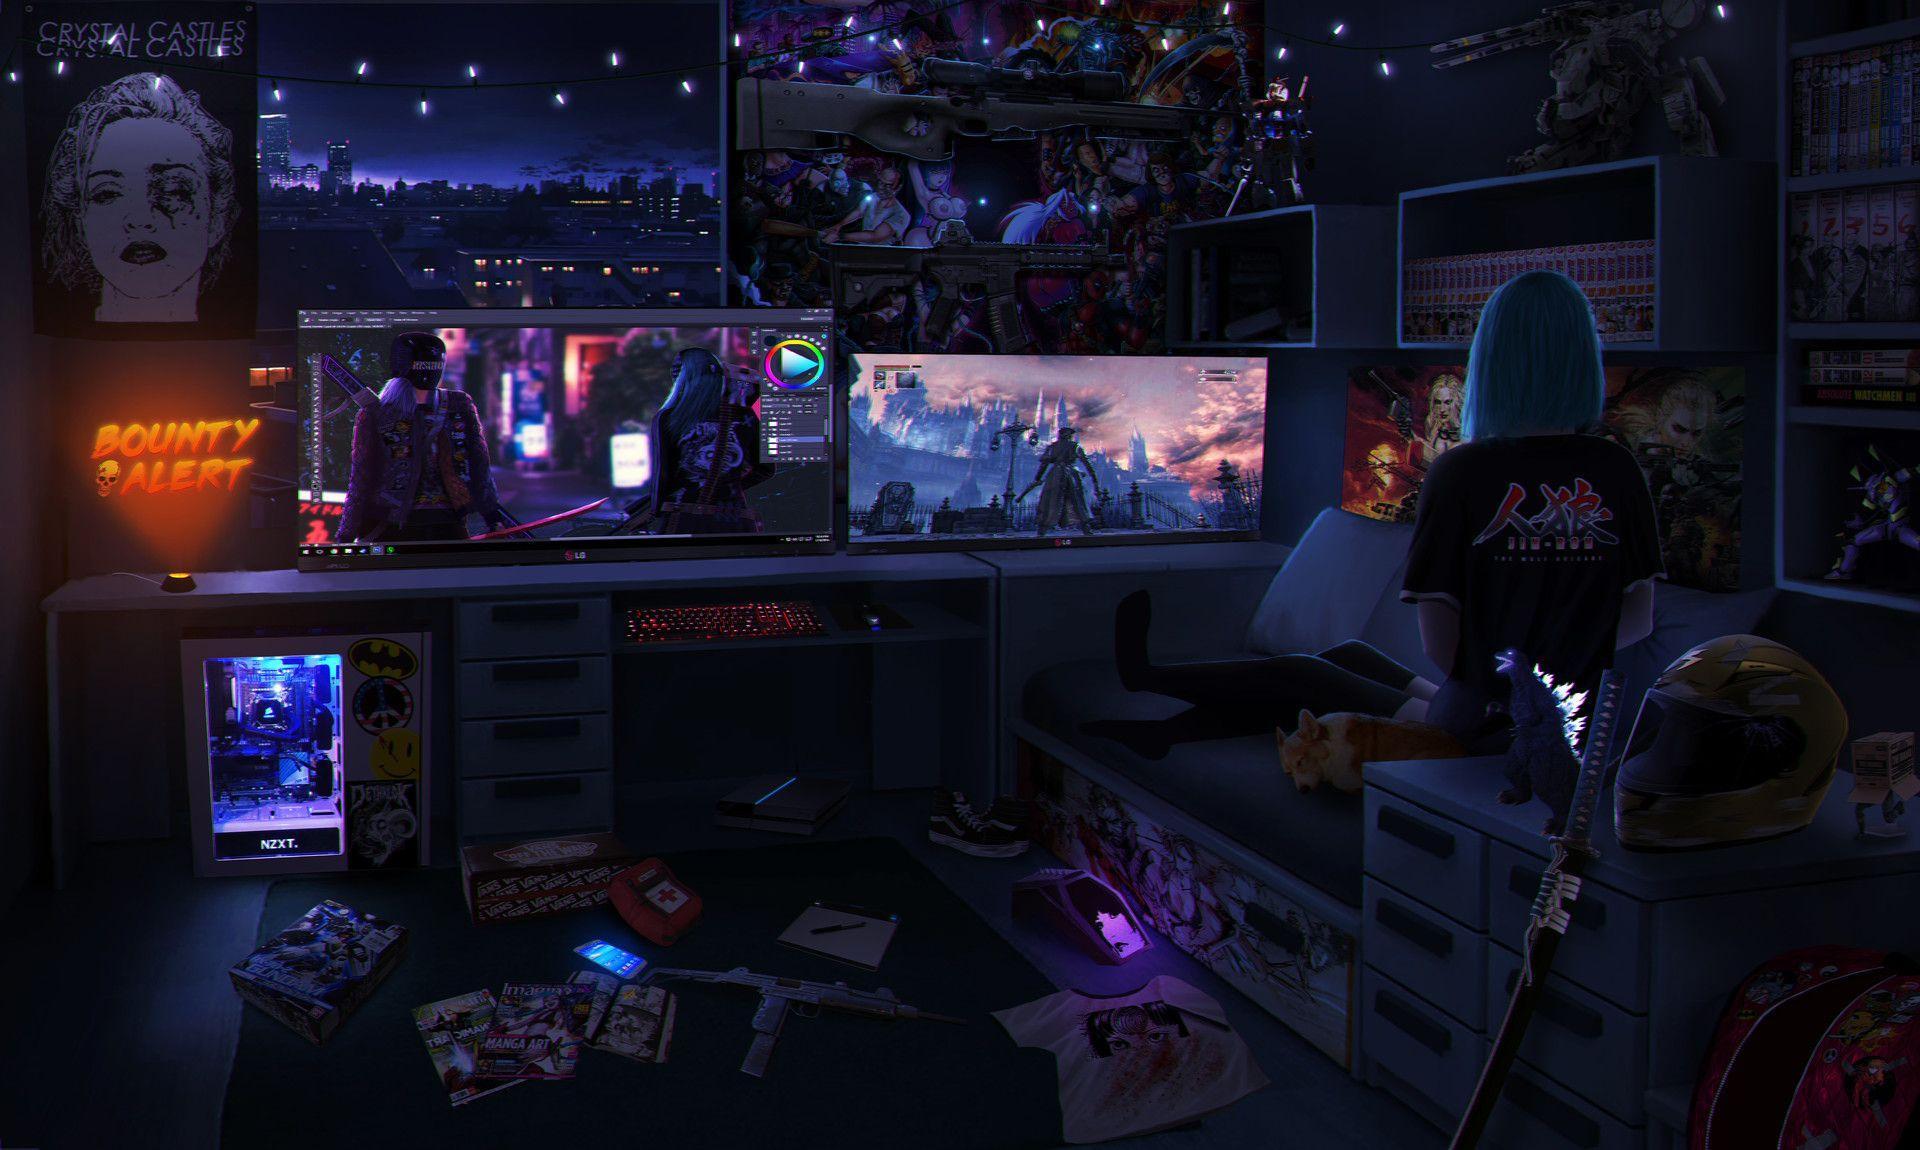 Anime gamer girl, room, gaming setup, headphones, Anime, HD wallpaper |  Peakpx